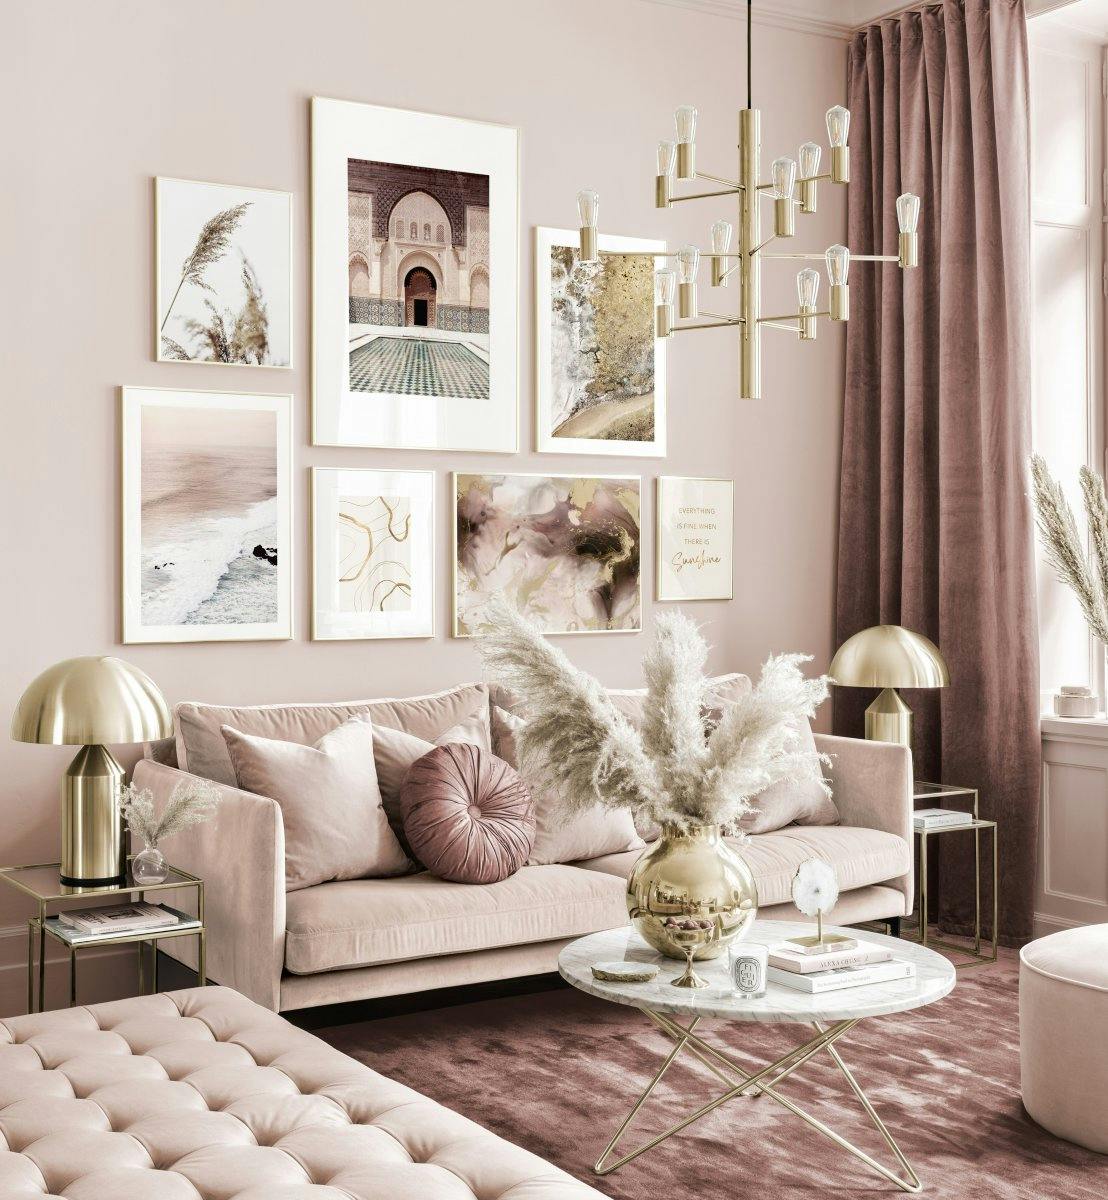 Galleria a parete in toni beige rosa poster astratti e cornici dorate